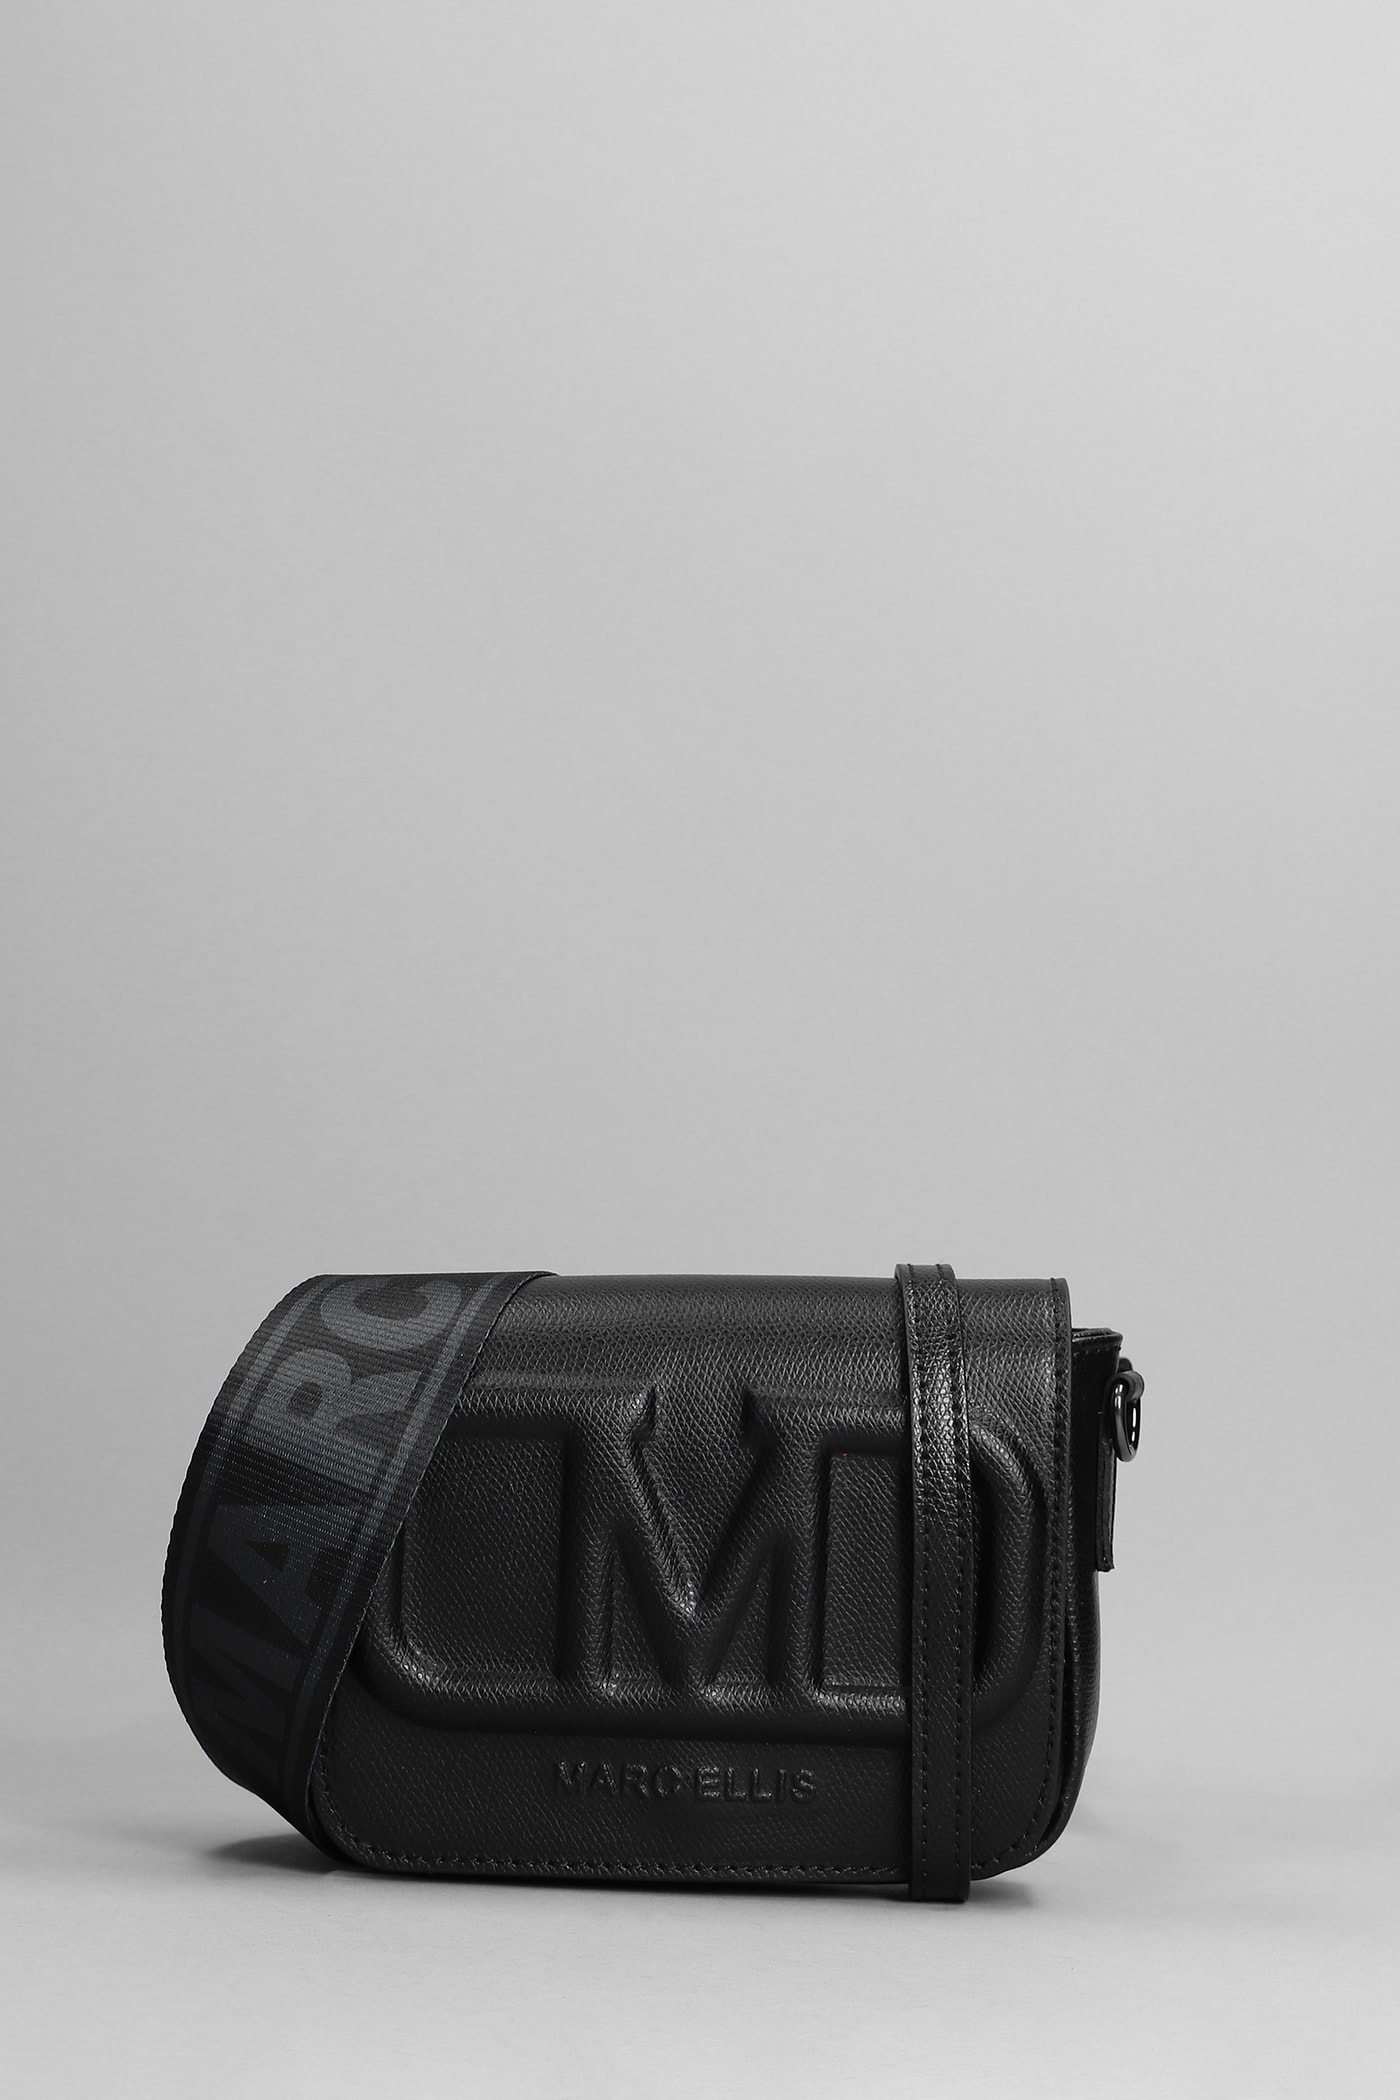 Marc Ellis Super S Shoulder Bag In Black Leather